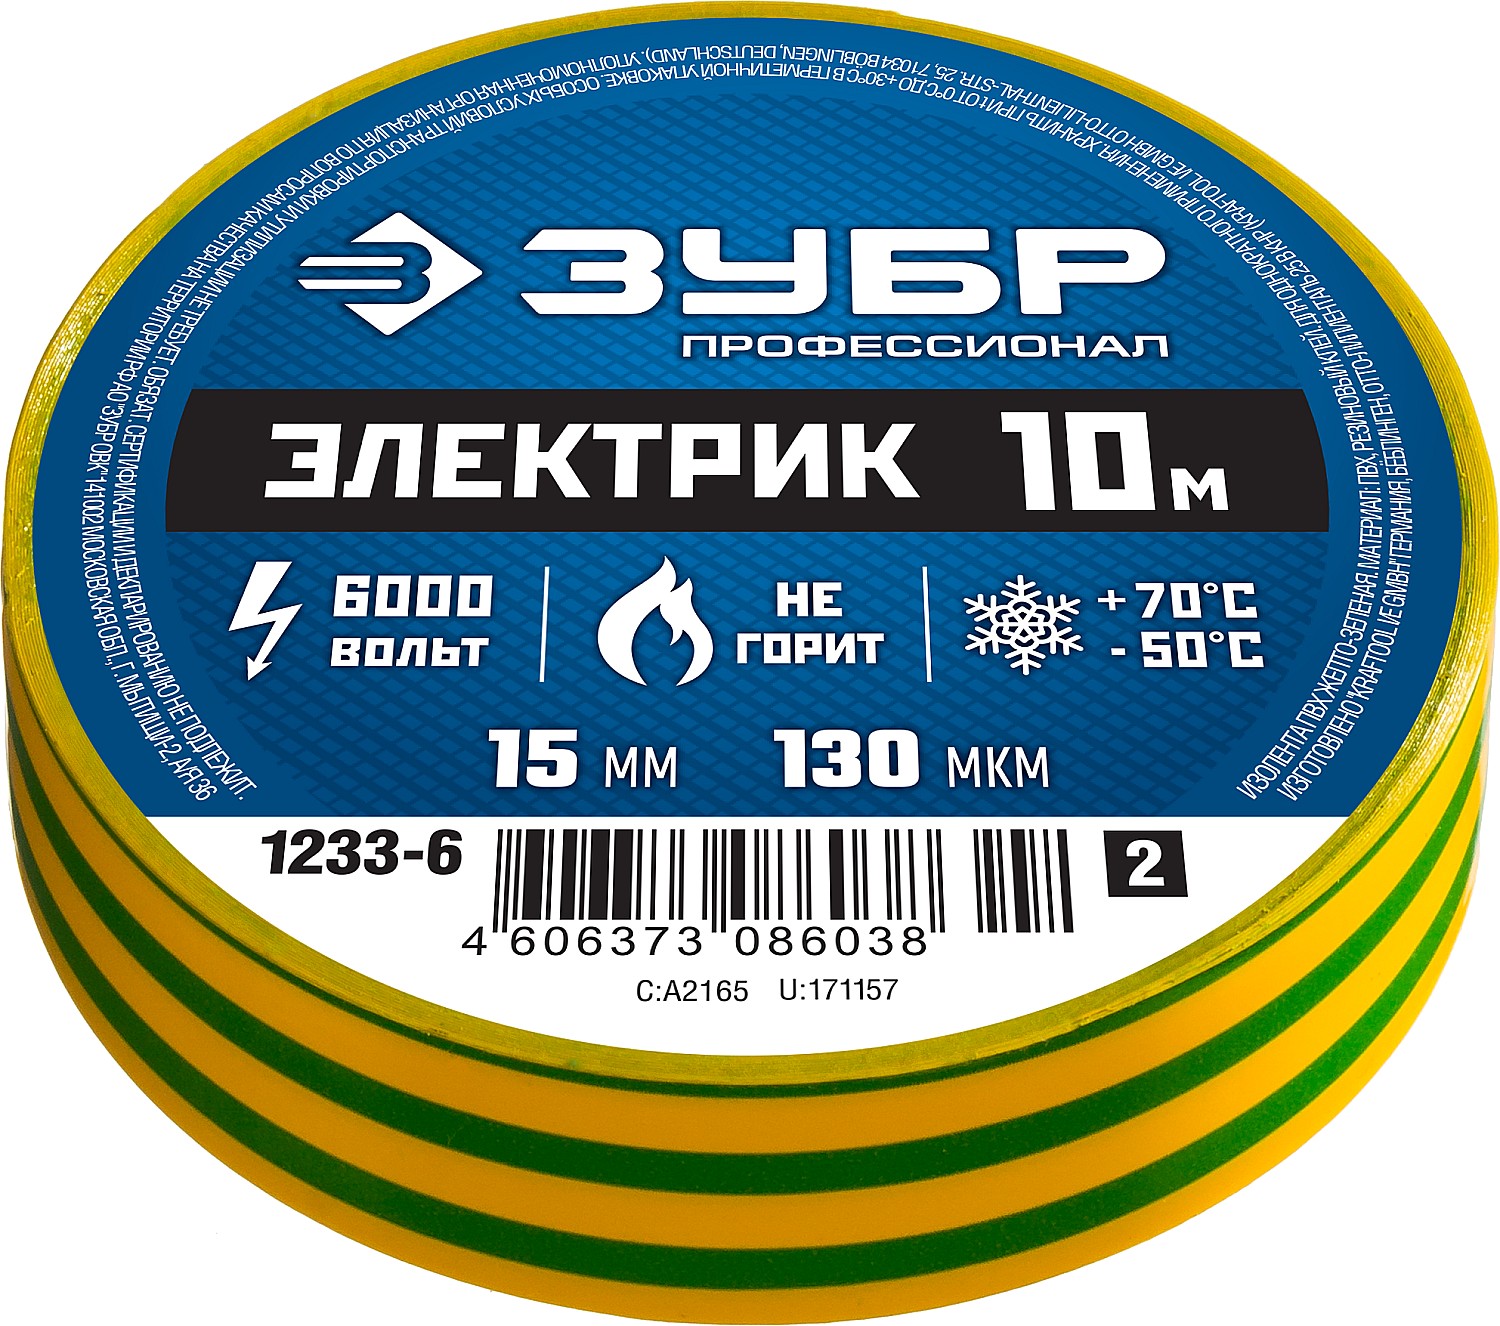 ЗУБР ЭЛЕКТРИК-10, 15 мм х 10 м, 6 000 В, желто-зеленая, не поддерживает горение, изолента ПВХ, Профессионал (1233-6)